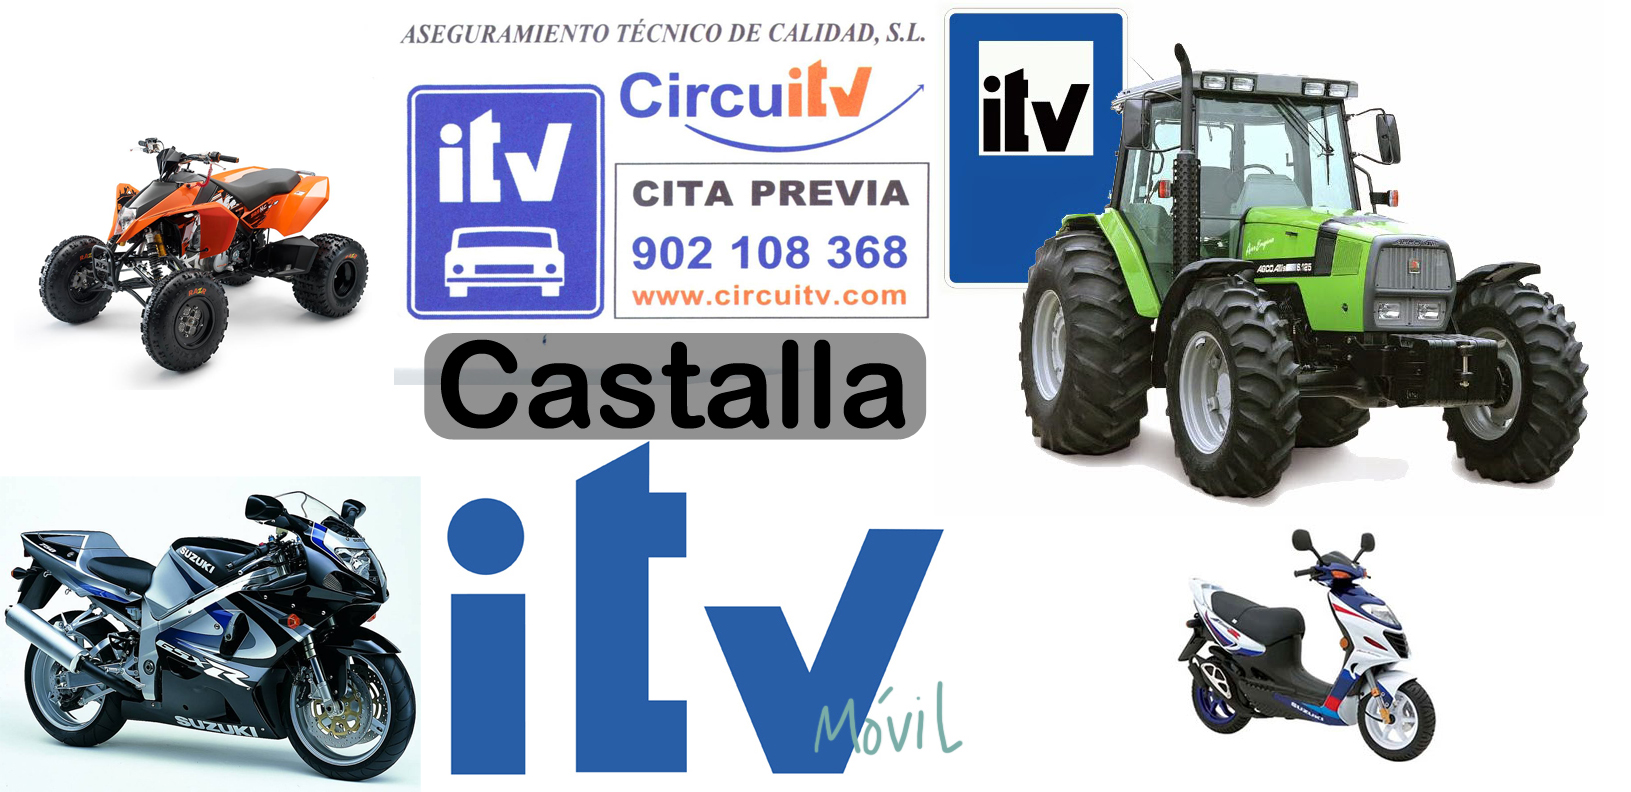 ITV CASTALLA ABRIL 2015